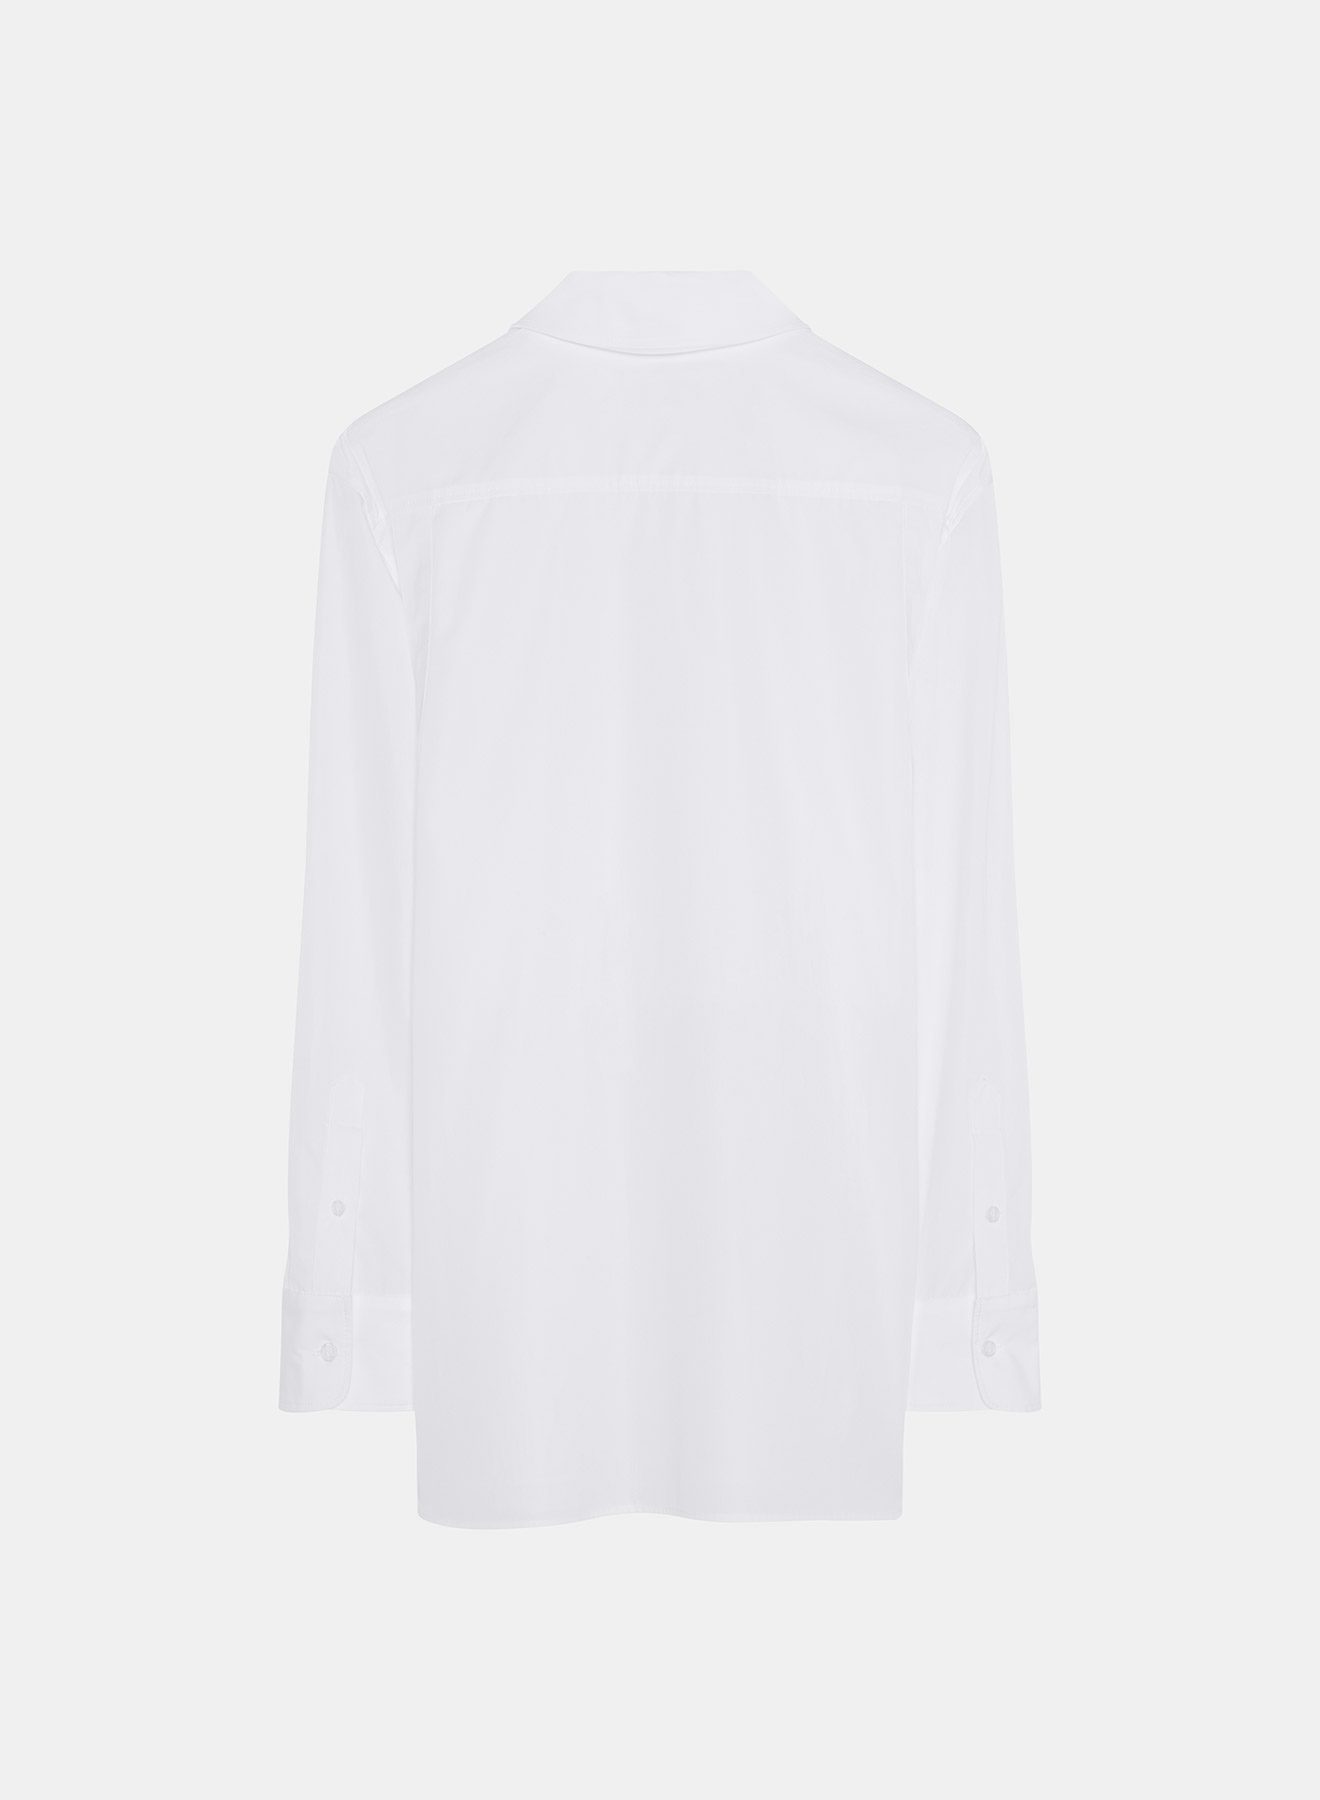 Nina Ricci Shirt White